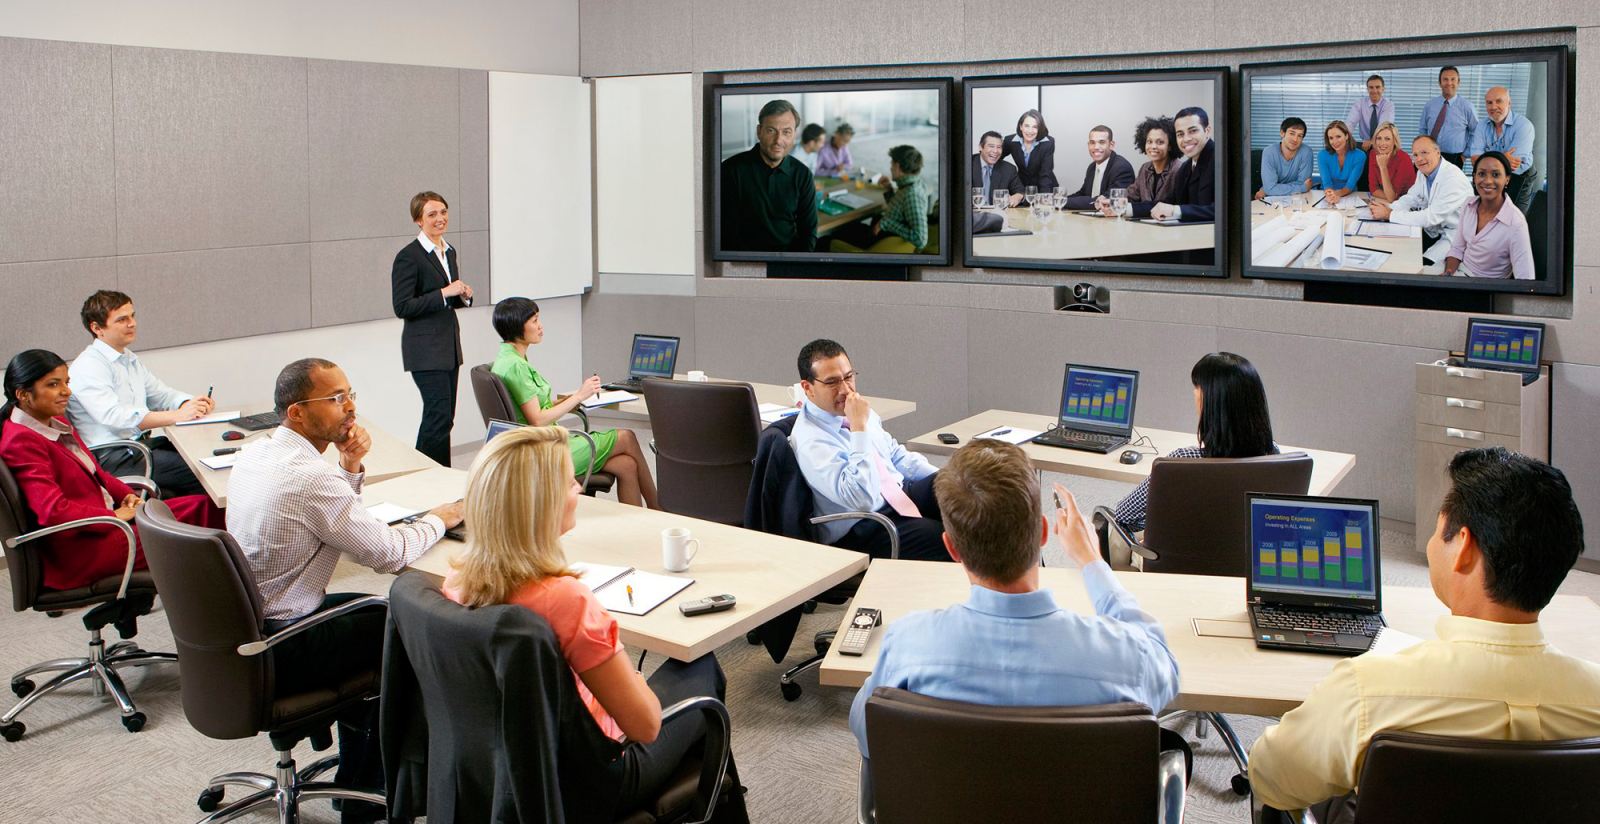 Thiết bị hội nghị truyền hình là yếu tố quan trọng cho một buổi hội nghị và hội họp